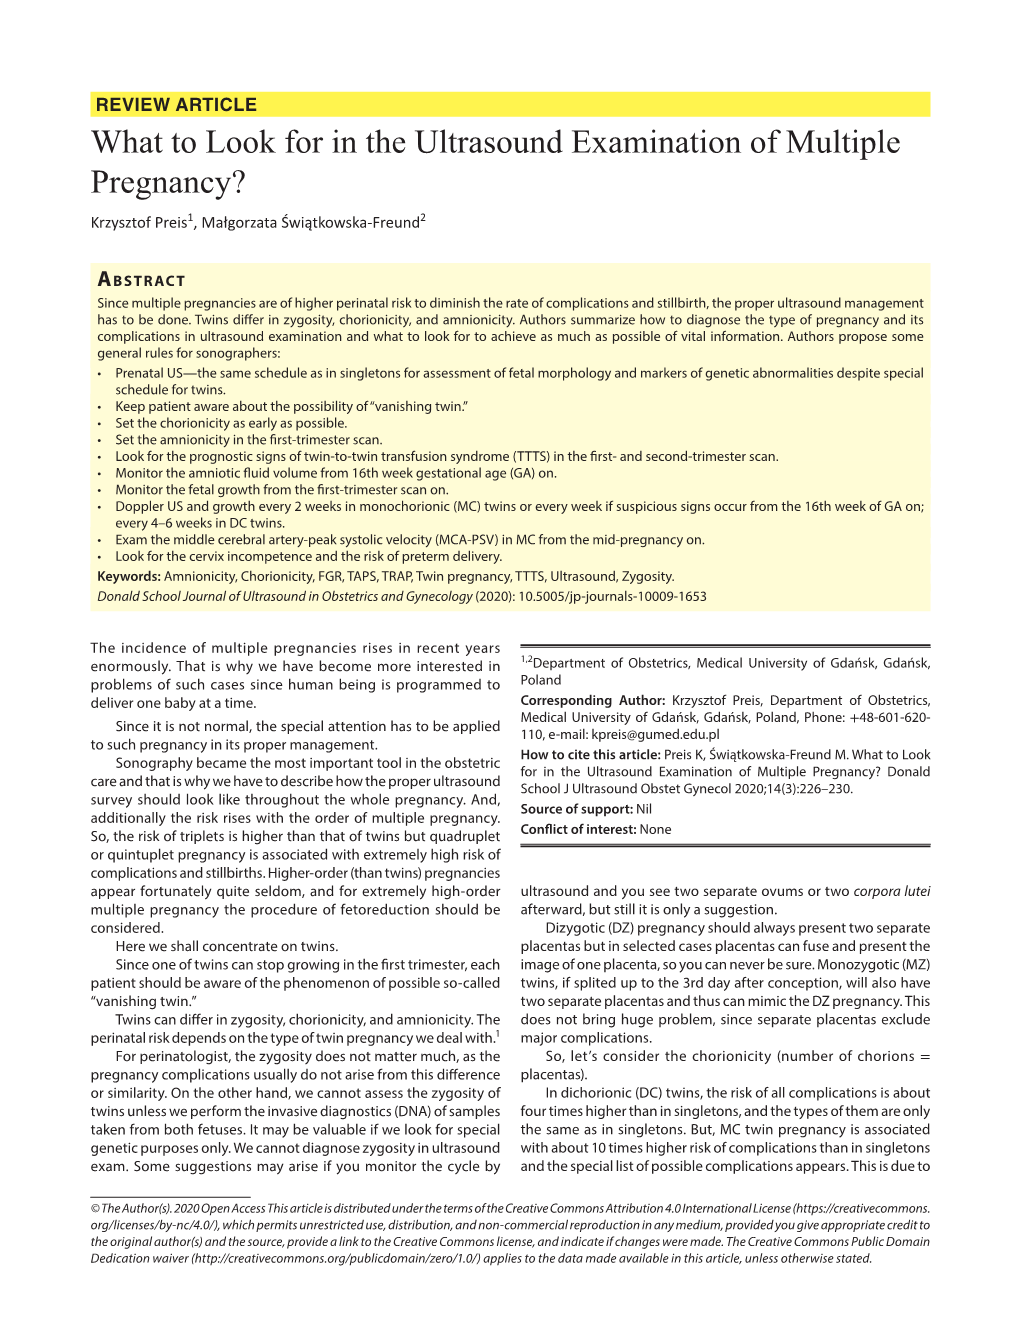 What to Look for in the Ultrasound Examination of Multiple Pregnancy? Krzysztof Preis1, Małgorzata Świątkowska-Freund2